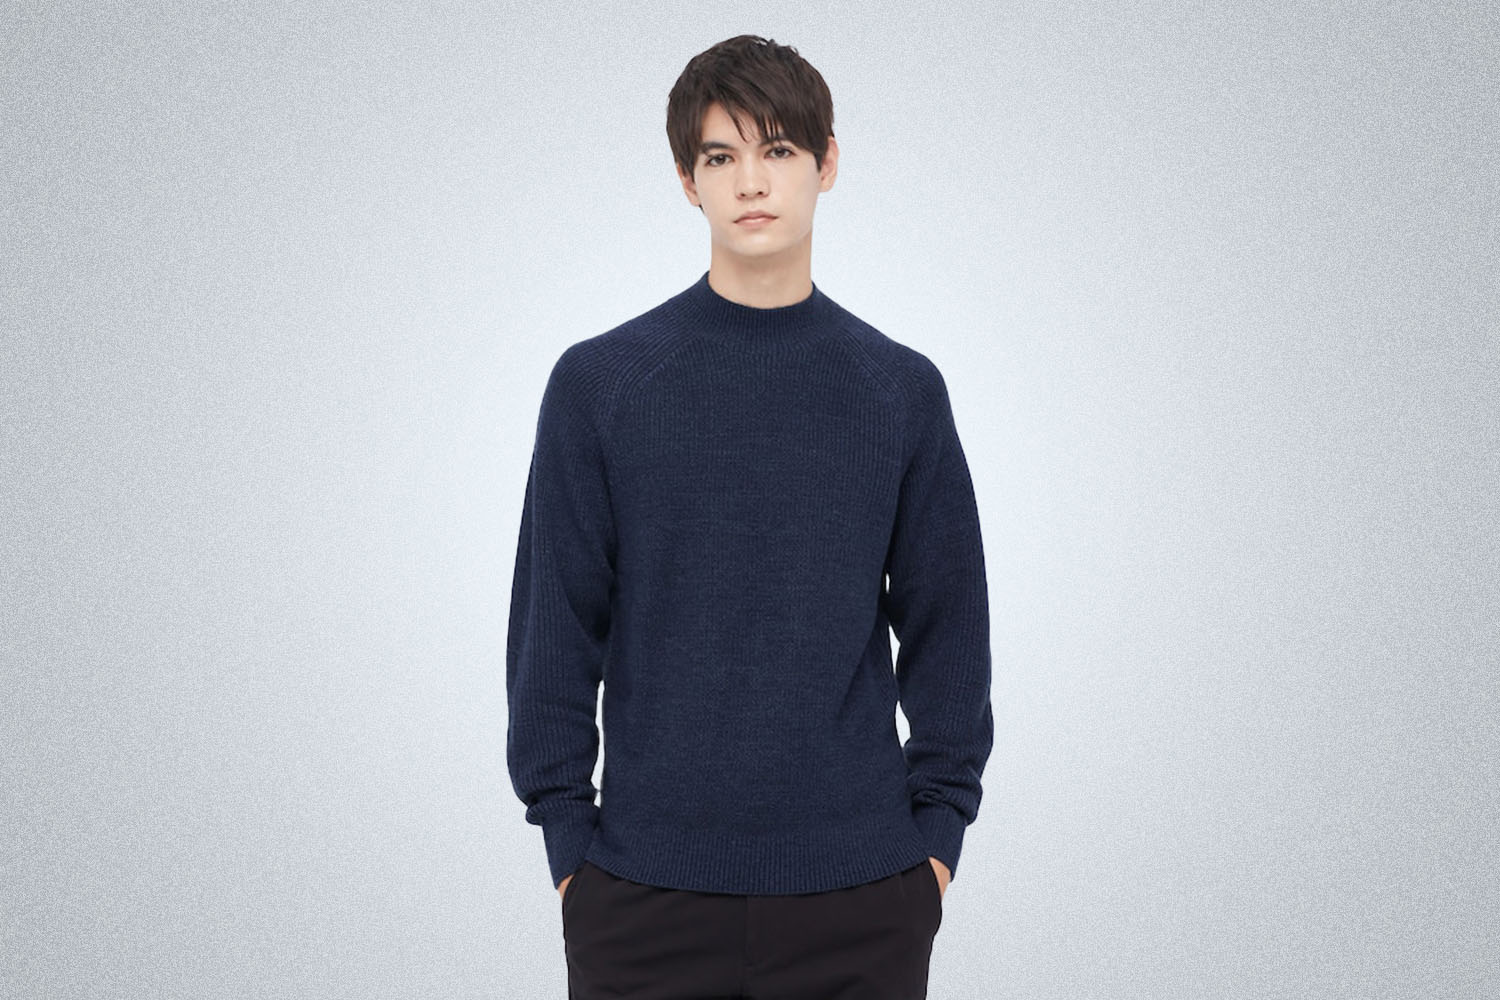 a model in a blue Uniqlo sweater